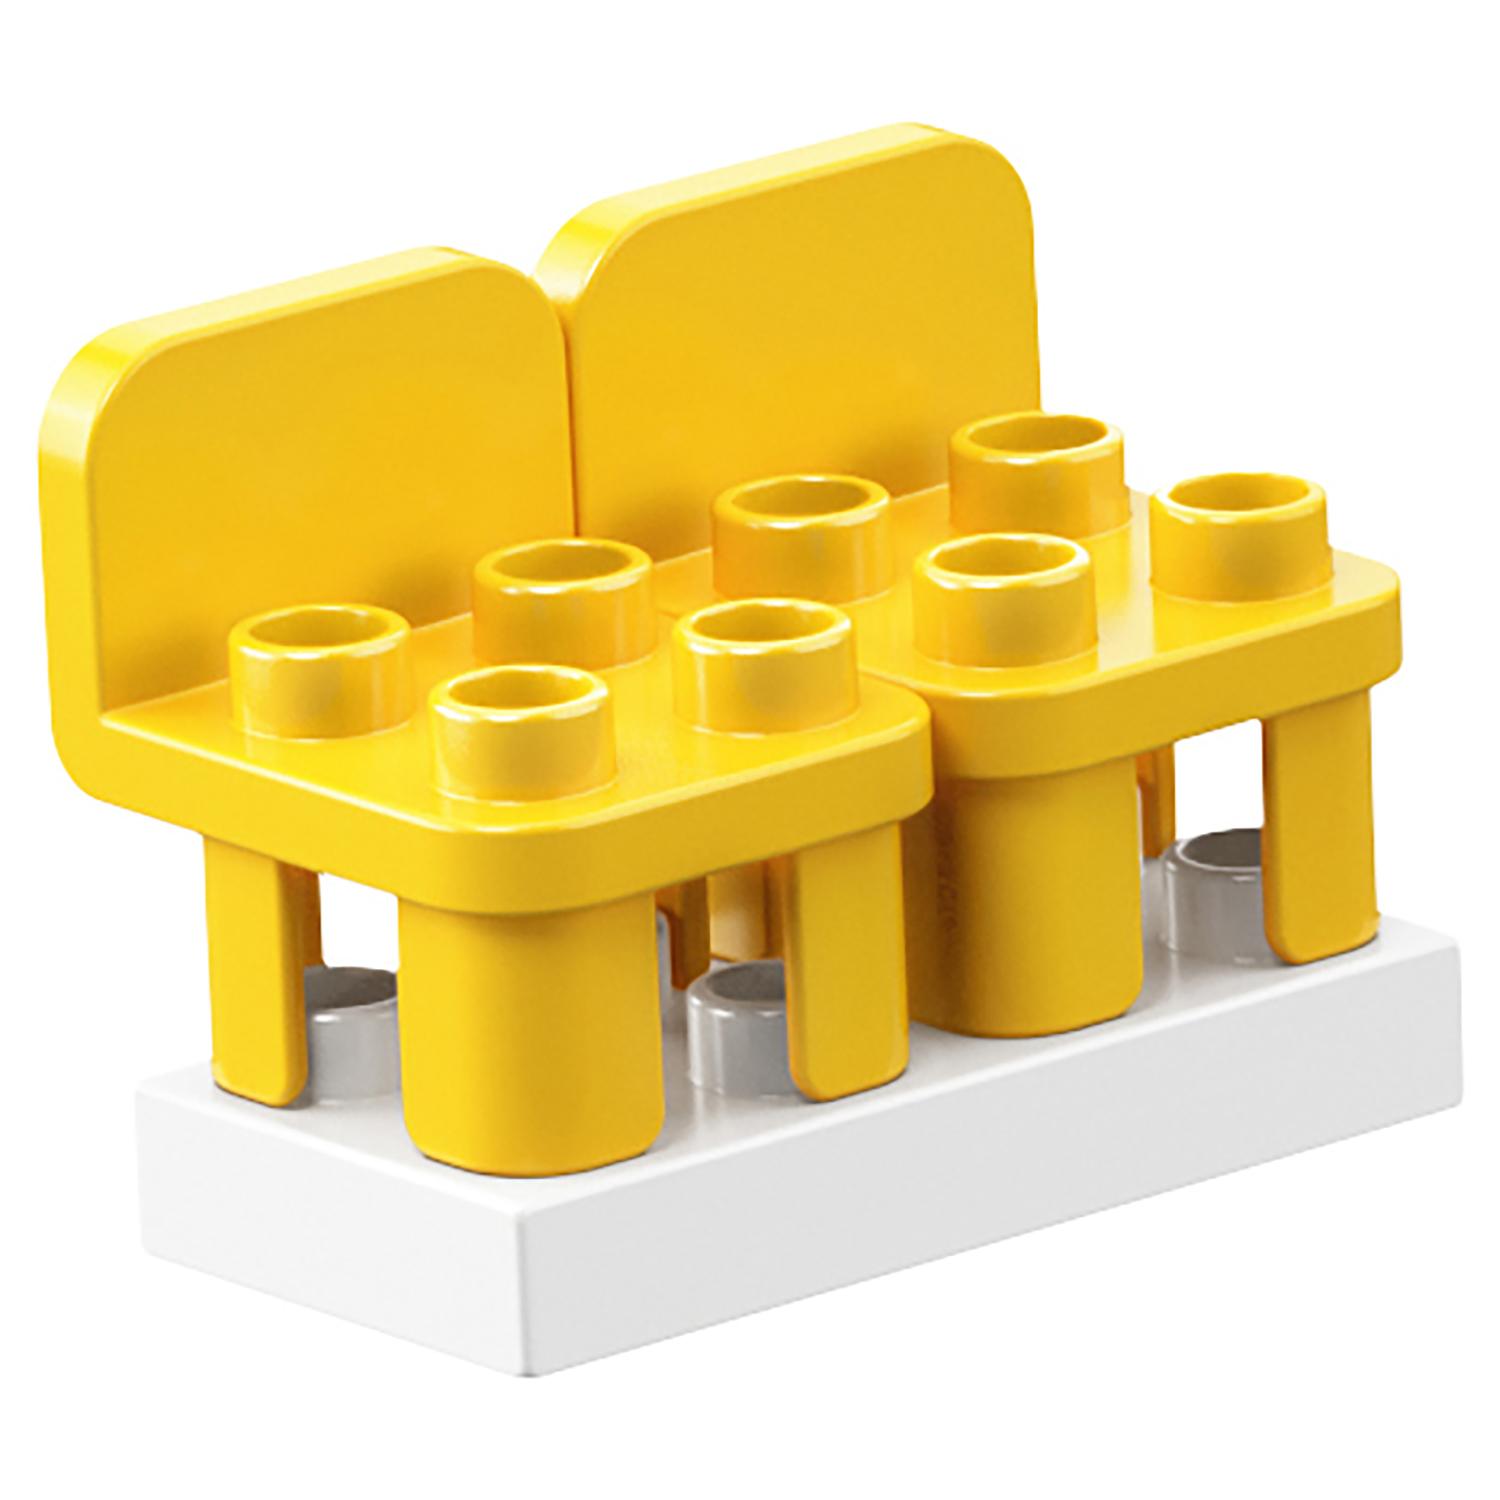 Конструктор Lego Duplo - Грузовой поезд  